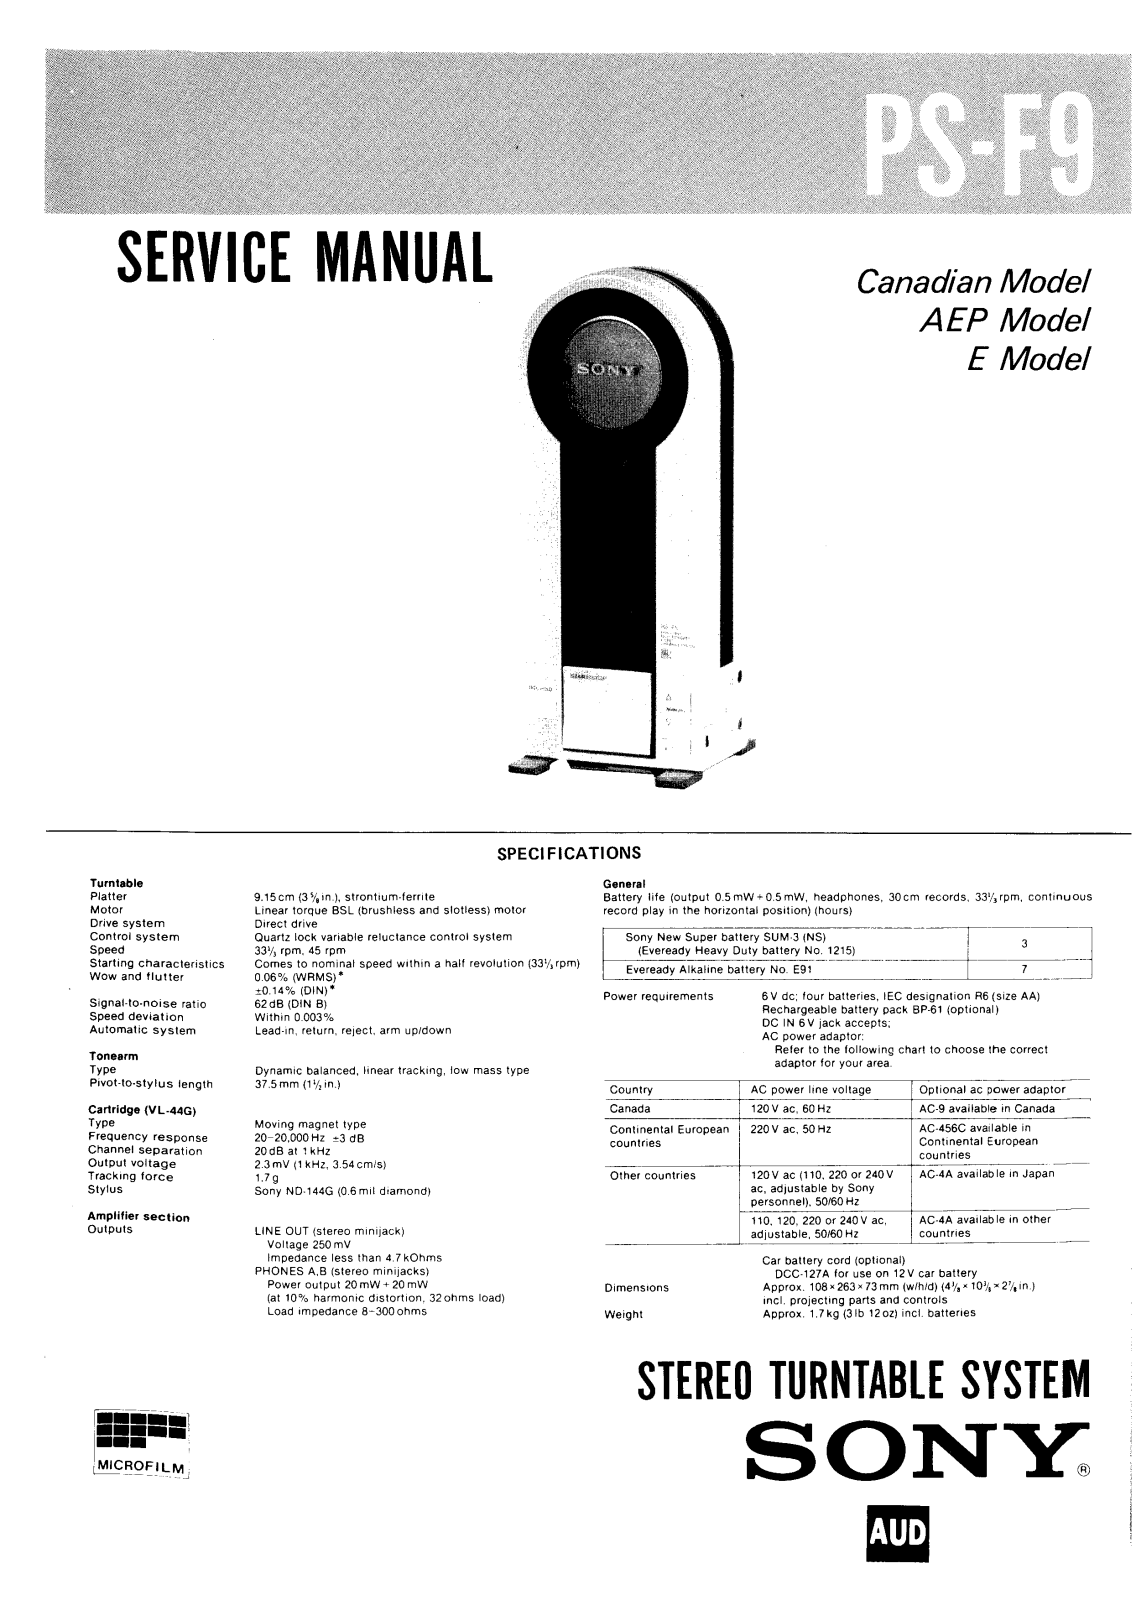 Sony PS-F9 Service Manual